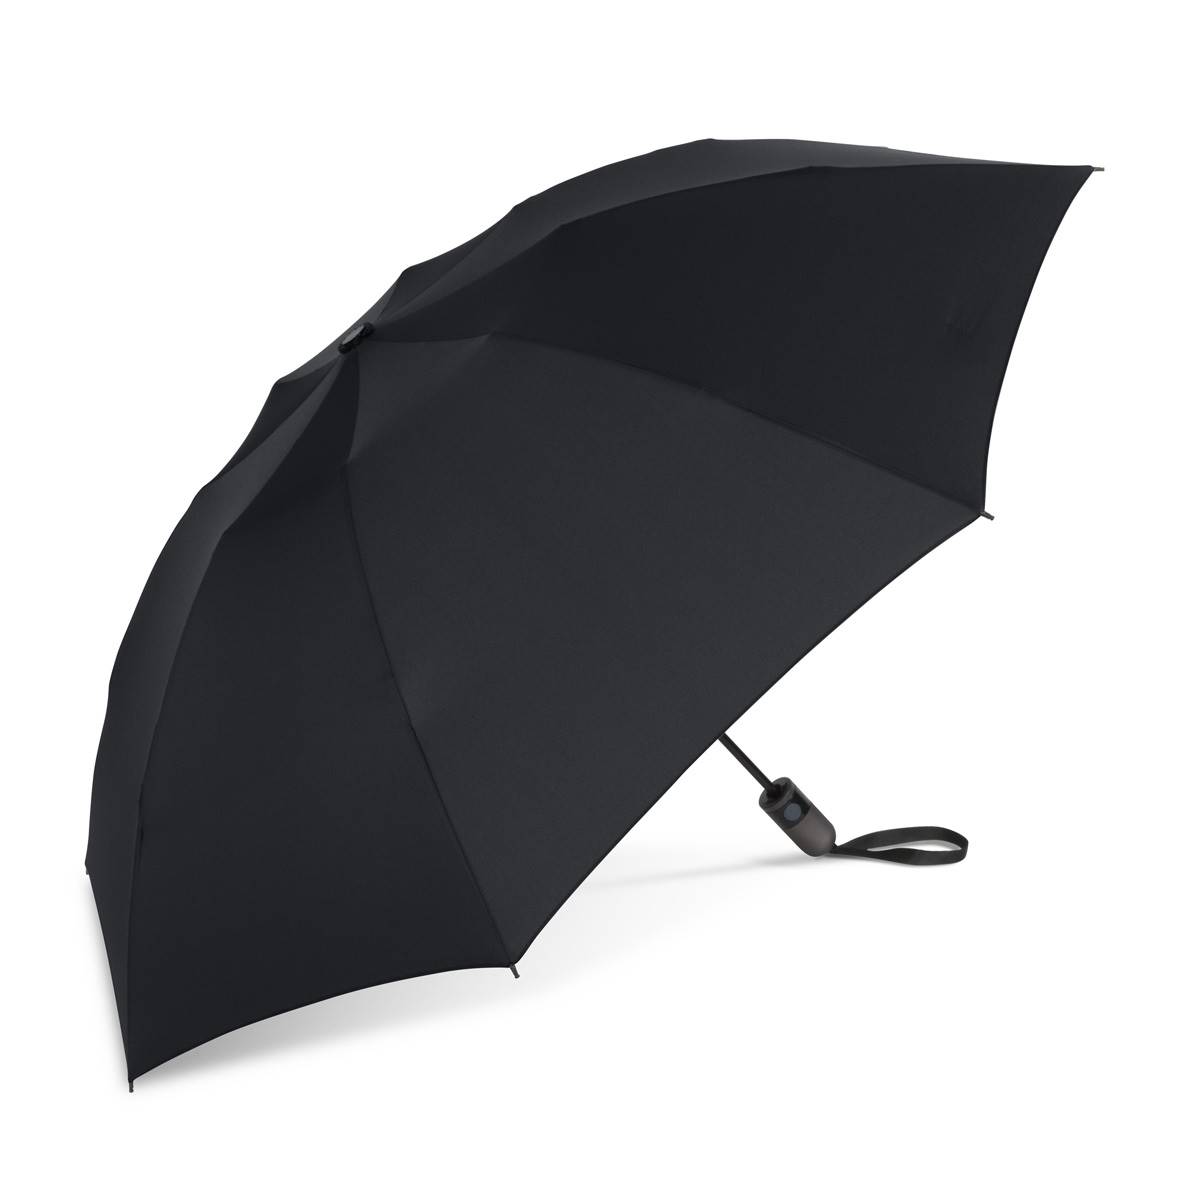 ShedRain Unbelievabrella(tm) Compact 47in. Solid Umbrella